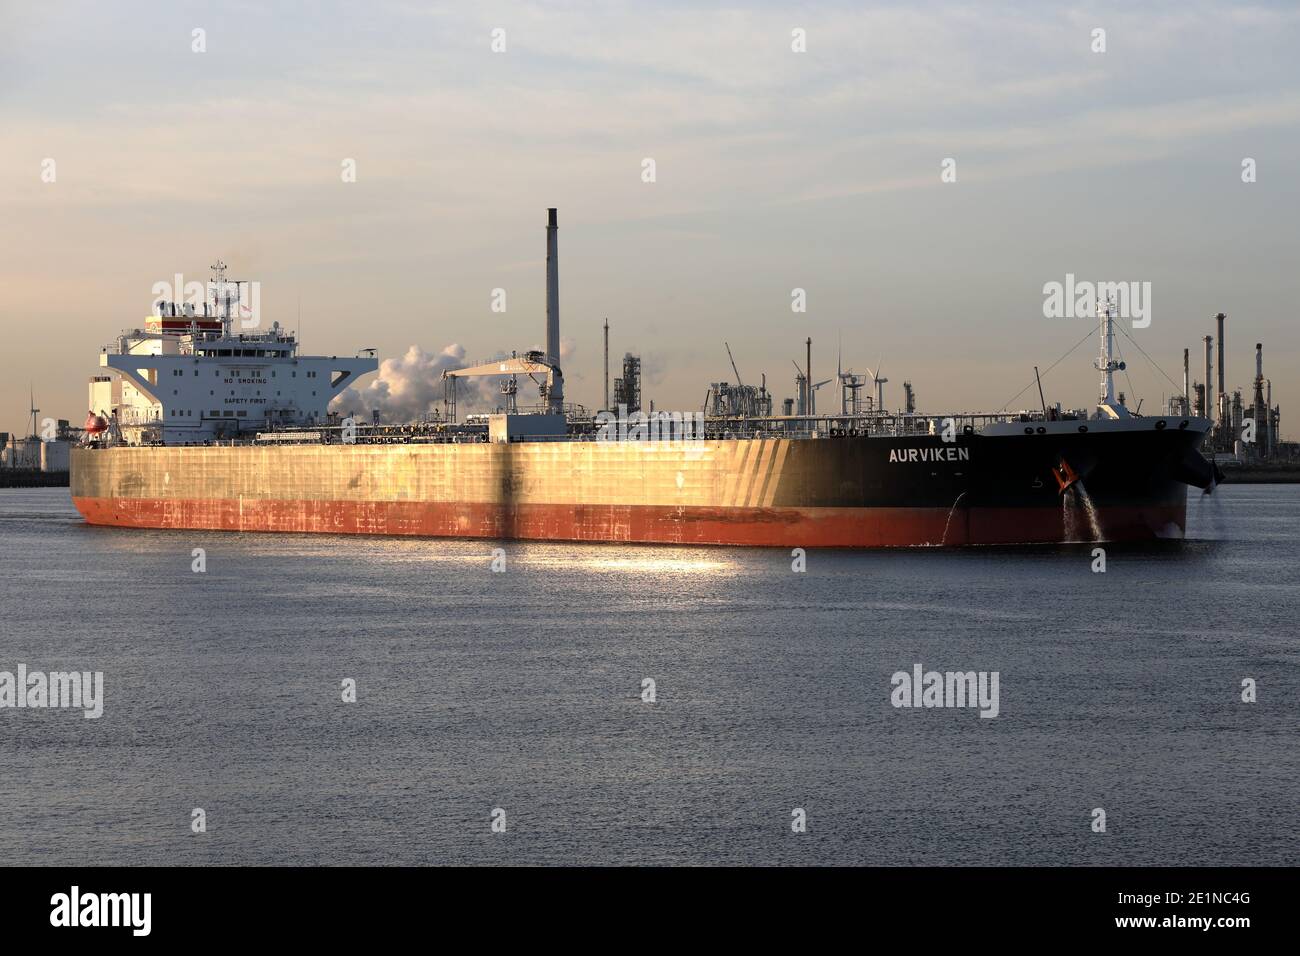 The crude oil tanker Aurviken will leave the port of Rotterdam on September 18, 2020. Stock Photo